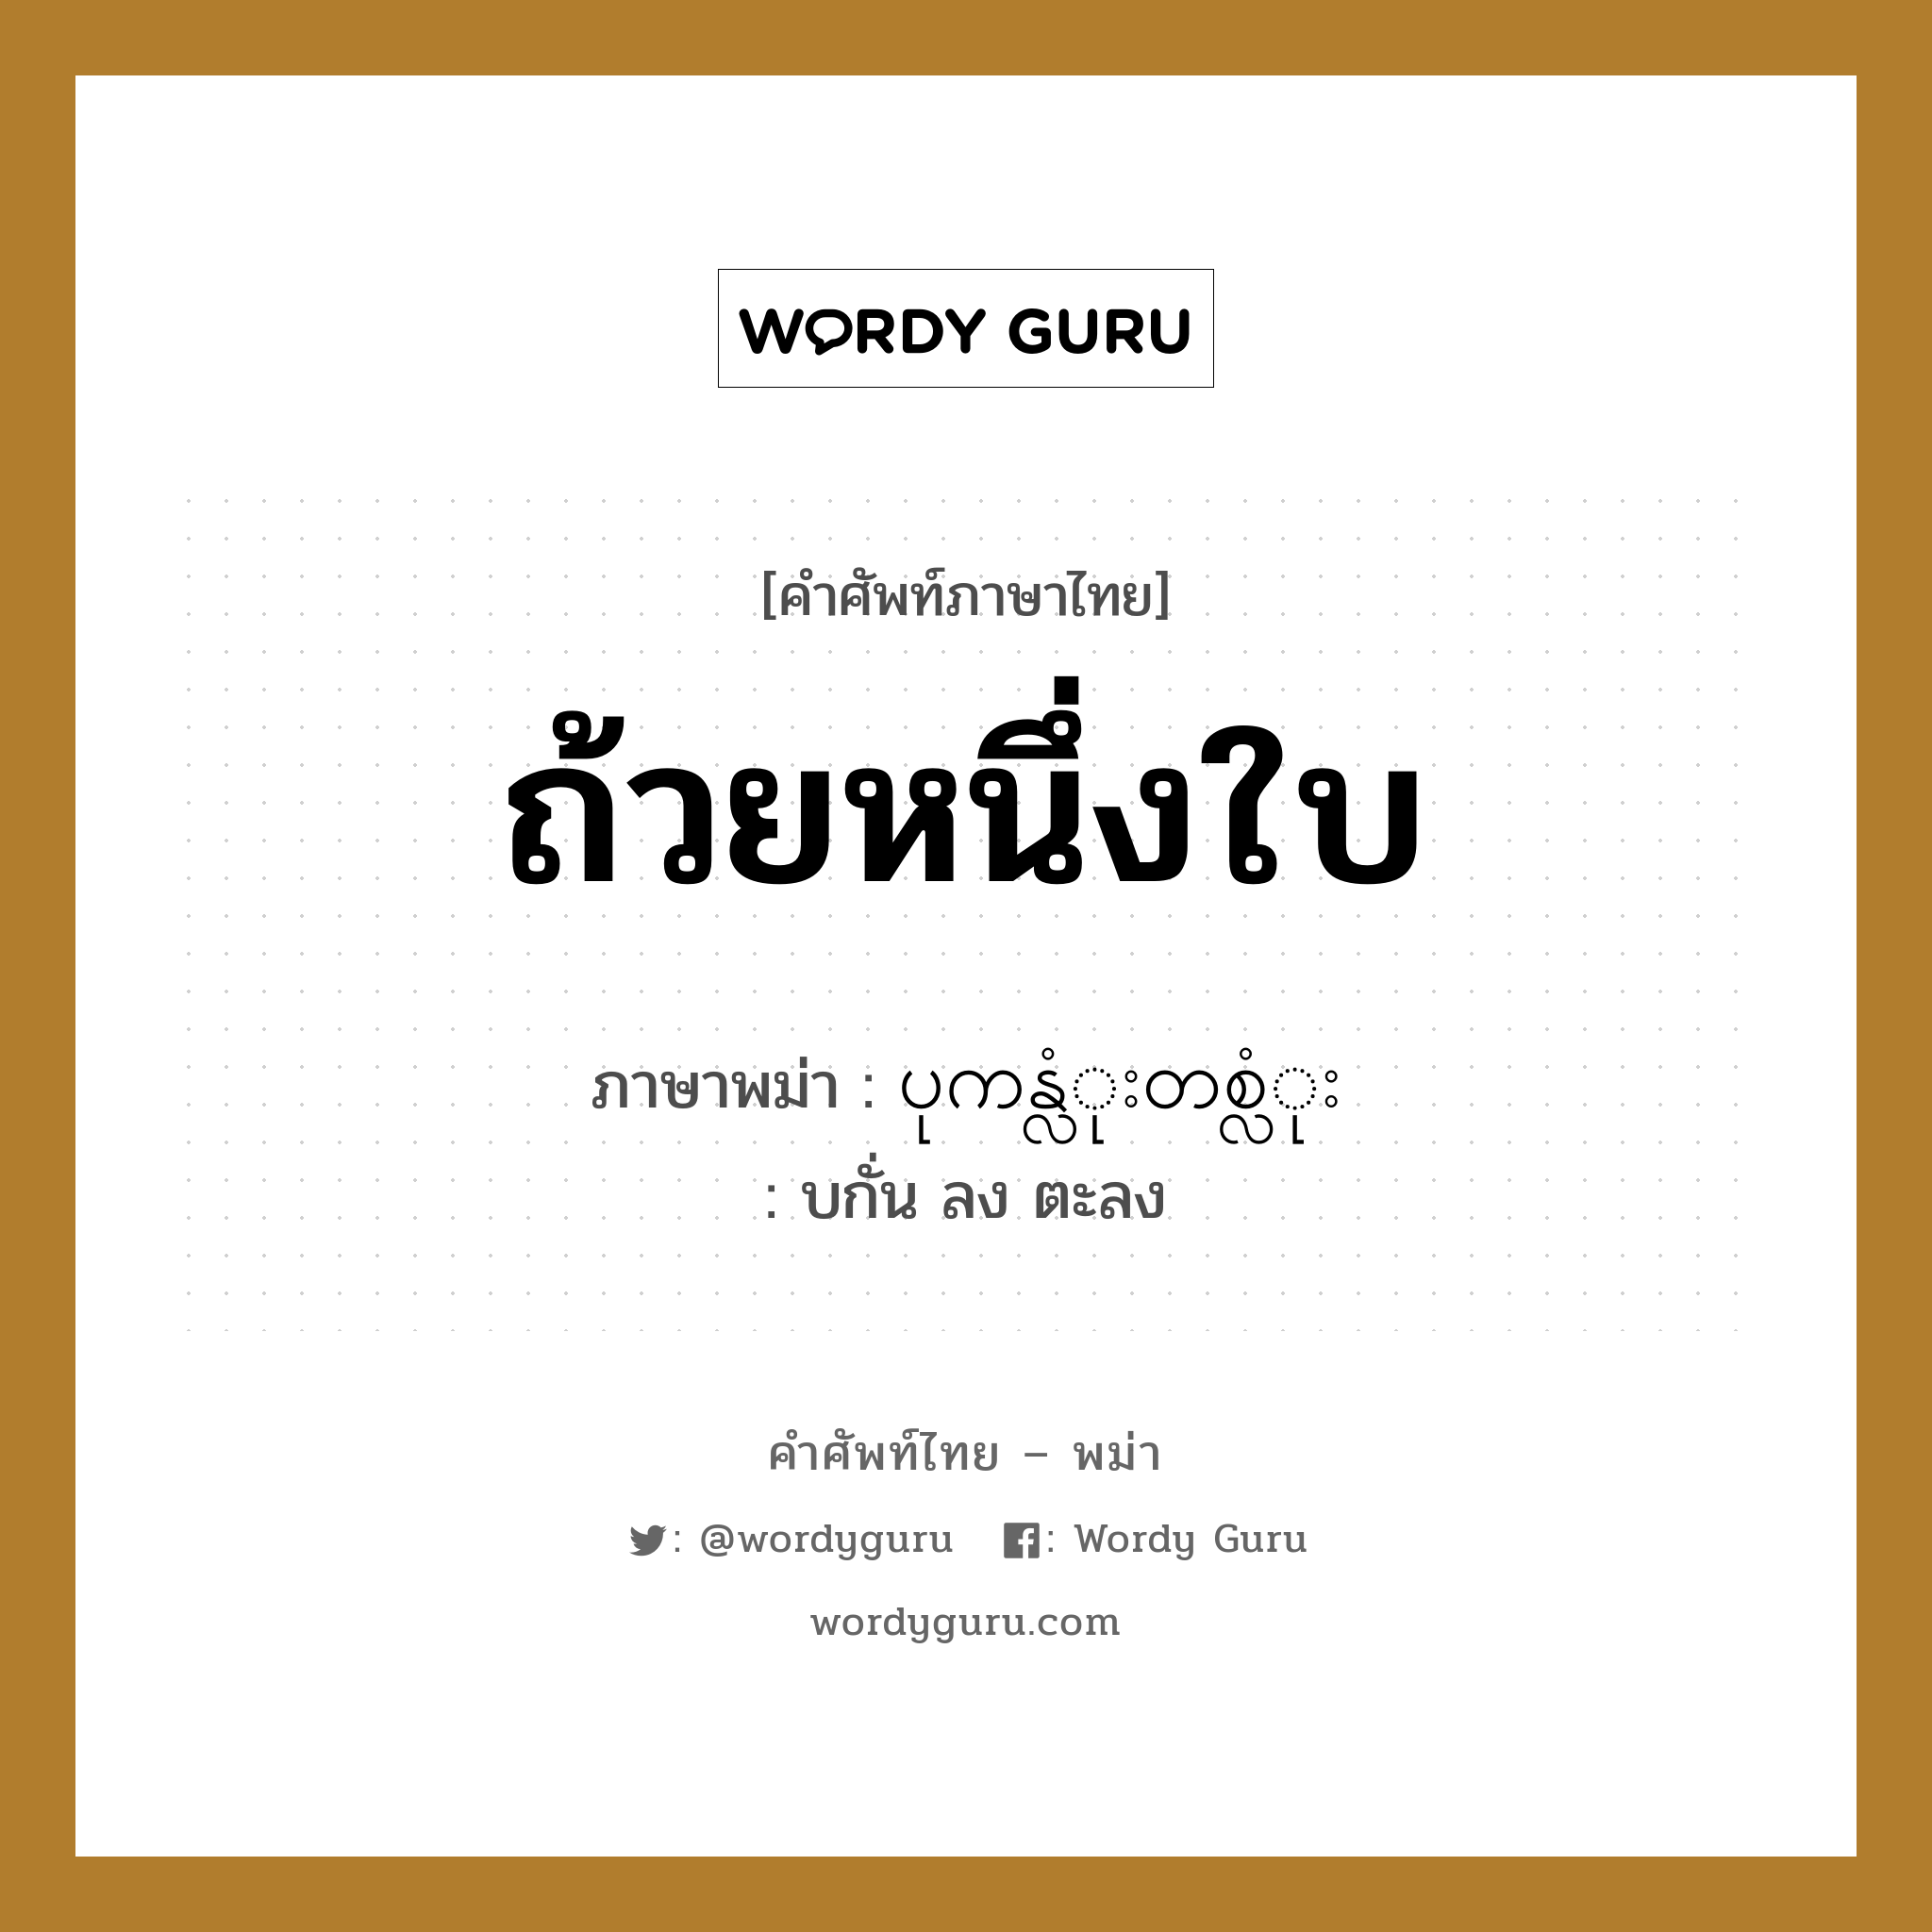 ถ้วยหนึ่งใบ ภาษาพม่าคืออะไร, คำศัพท์ภาษาไทย - พม่า ถ้วยหนึ่งใบ ภาษาพม่า ပုကန္လံုးတစ္လံုး หมวด การนับสิ่งของ บกั่น ลง ตะลง หมวด การนับสิ่งของ